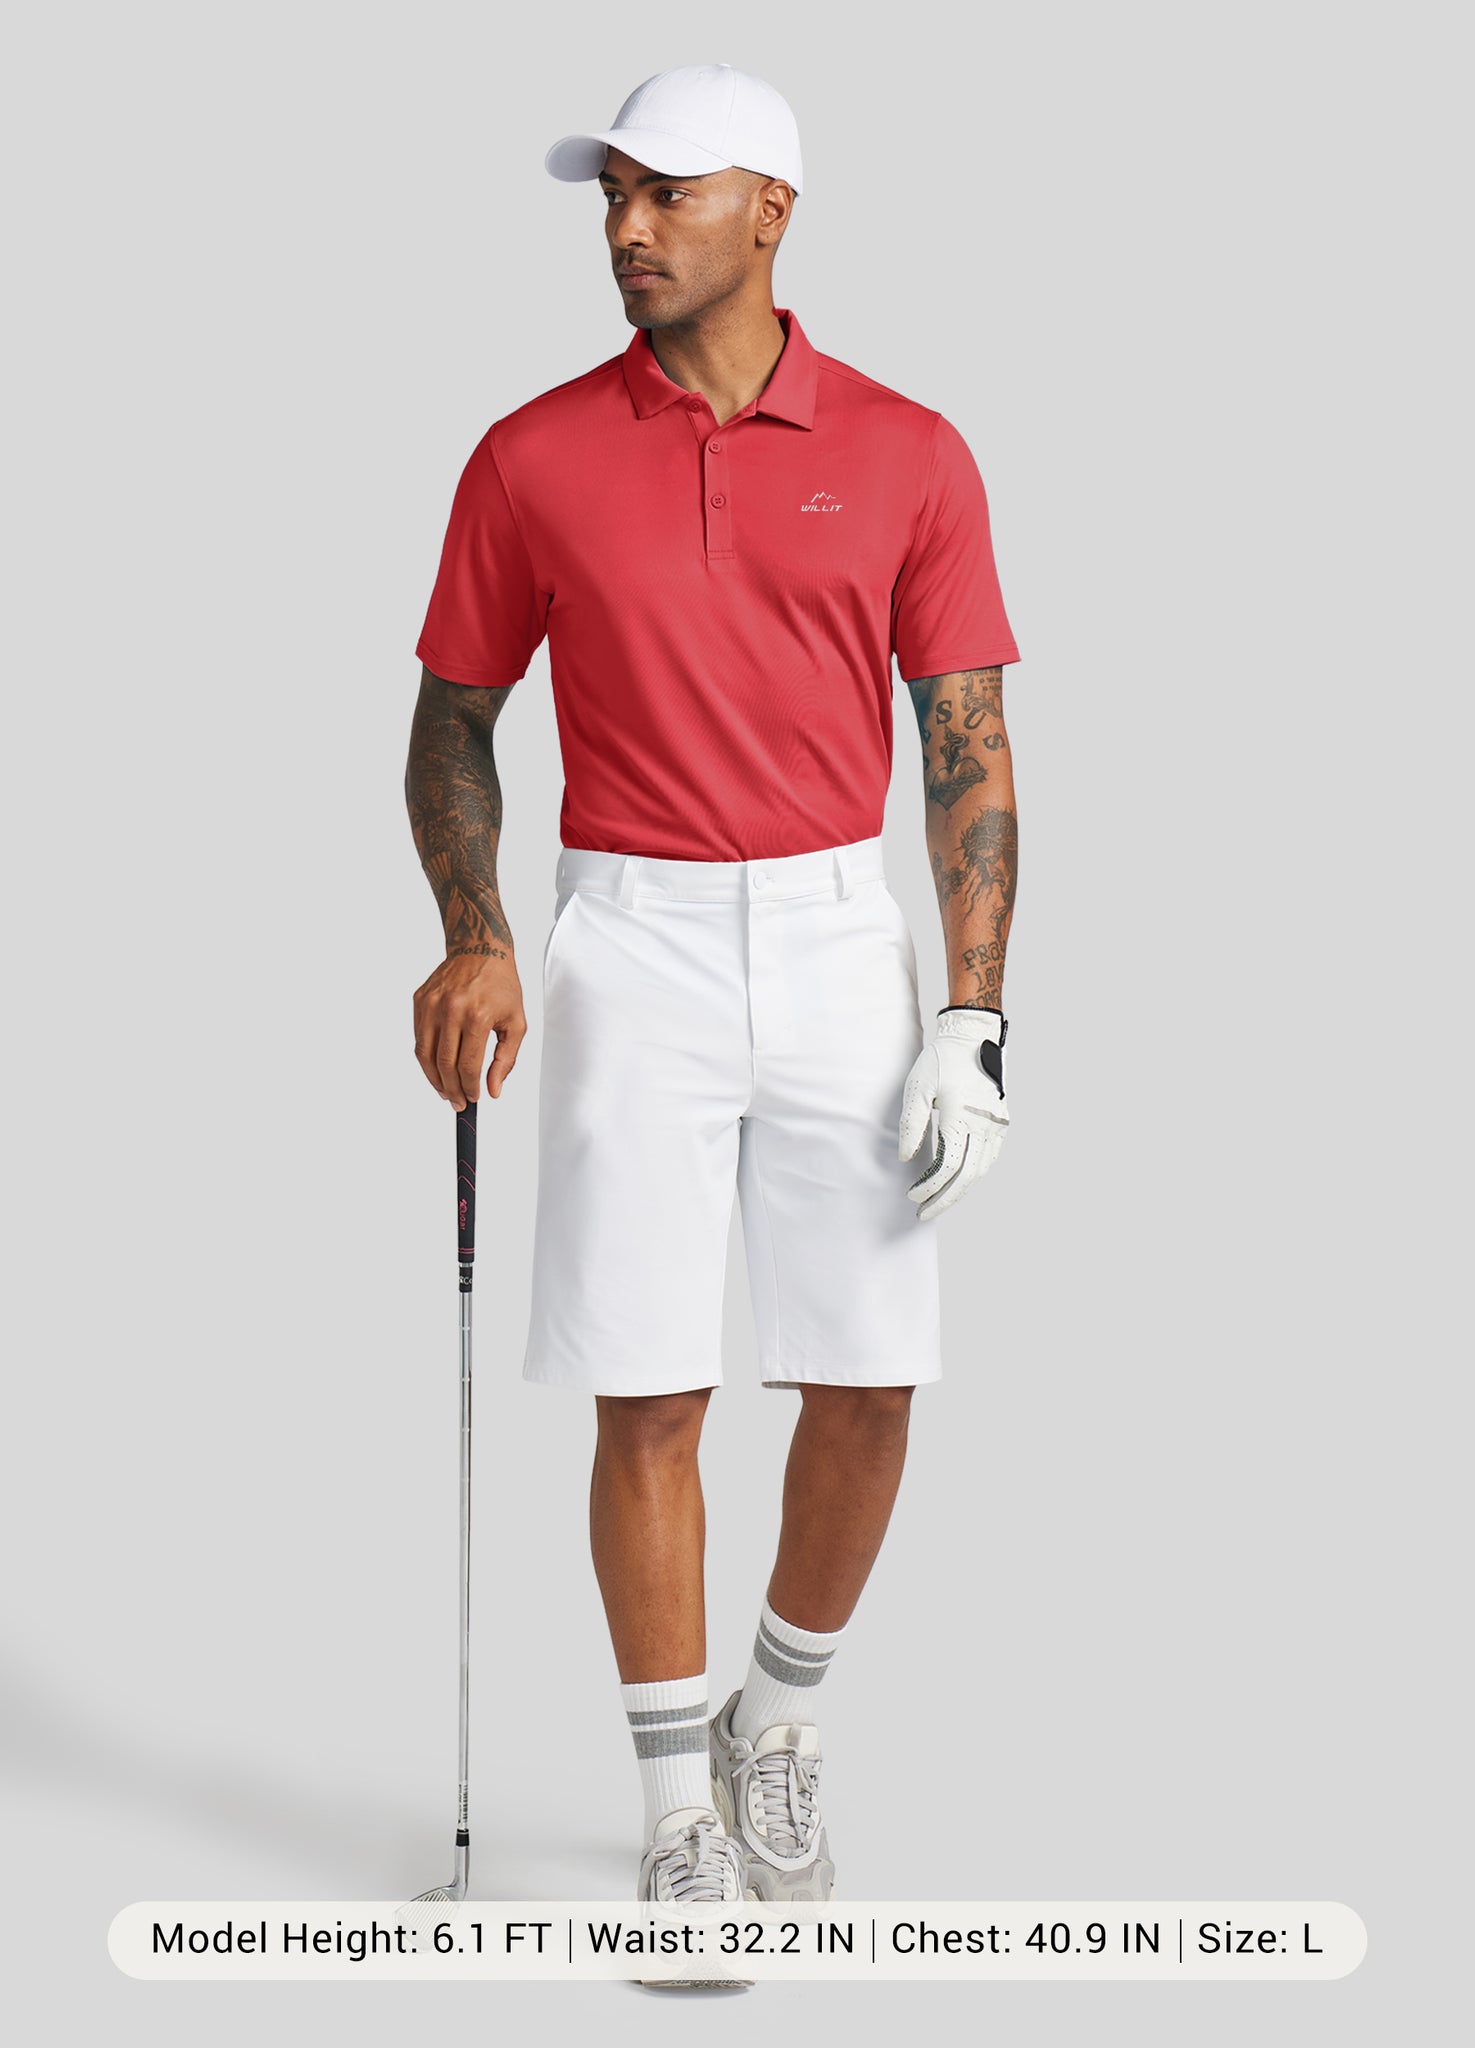 Men's Casual Golf Polo Shirt